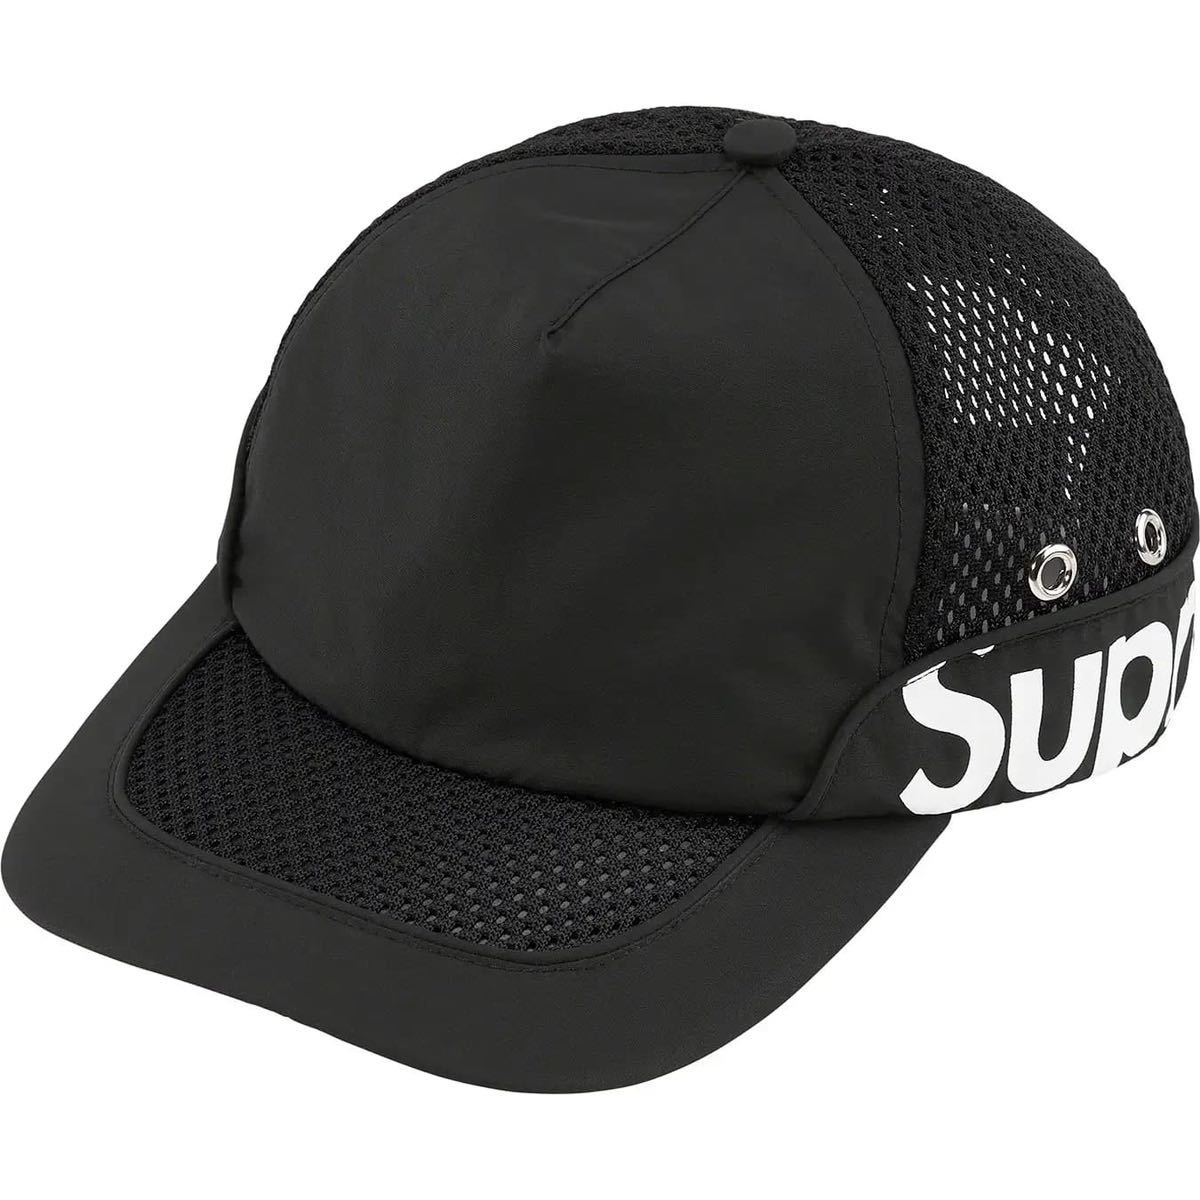 ヤフオク! -「supreme side logo」(帽子) (服飾小物)の落札相場・落札価格